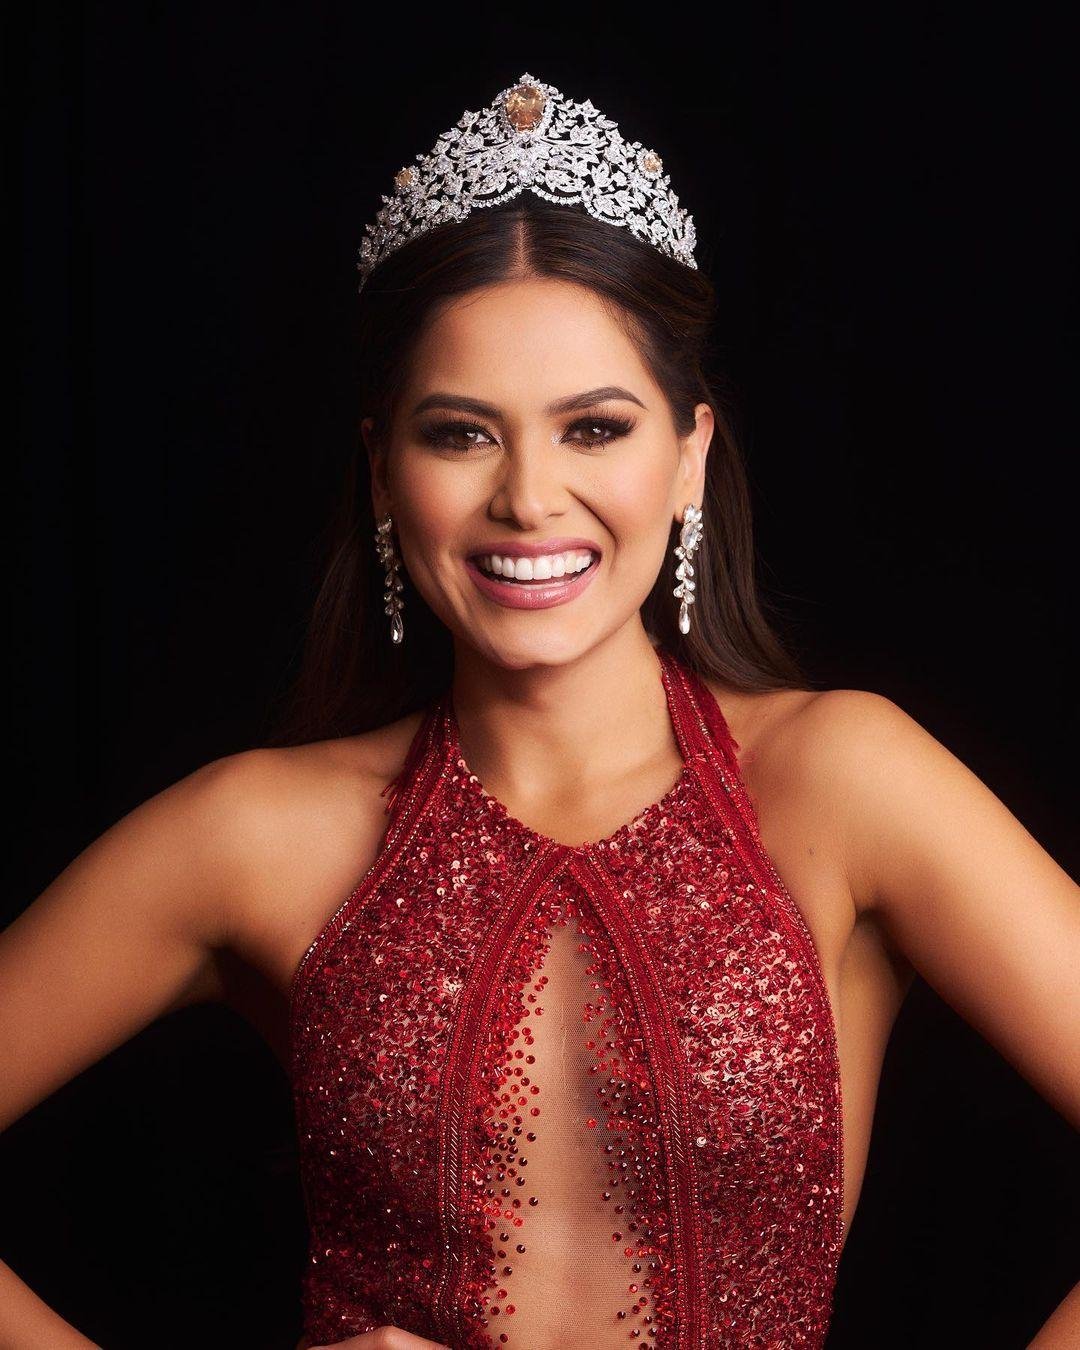 ملكة جمال الكون 2020 تاج معوض mouawad أندريا ميزا Andrea Meza 